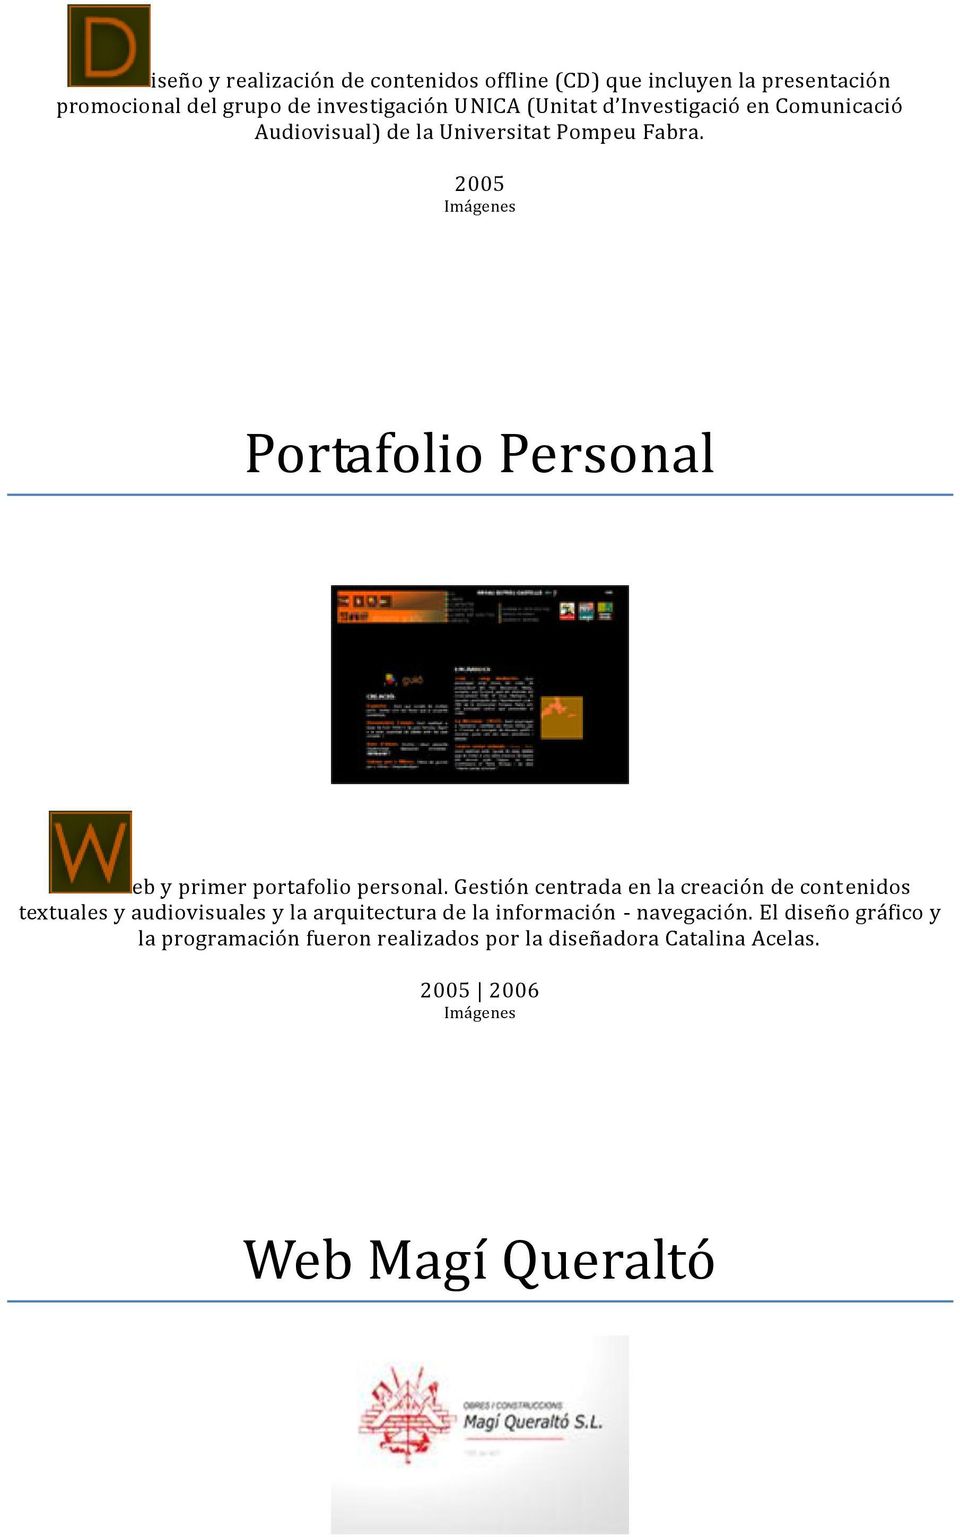 2005 Imágenes Portafolio Personal eb y primer portafolio personal.